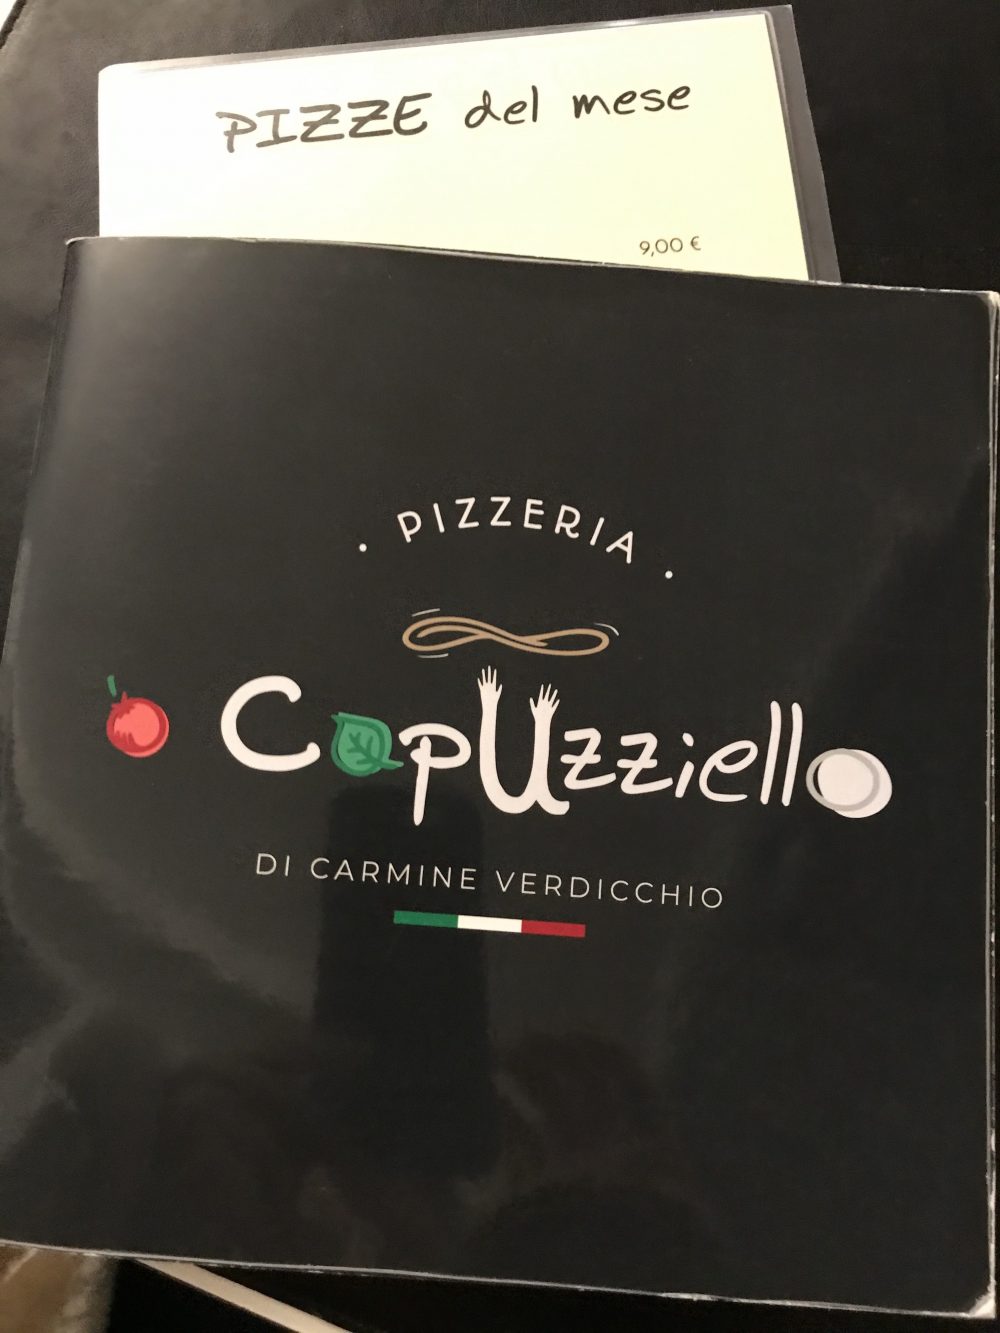 Pizzeria O’ Capuzziello - menu'